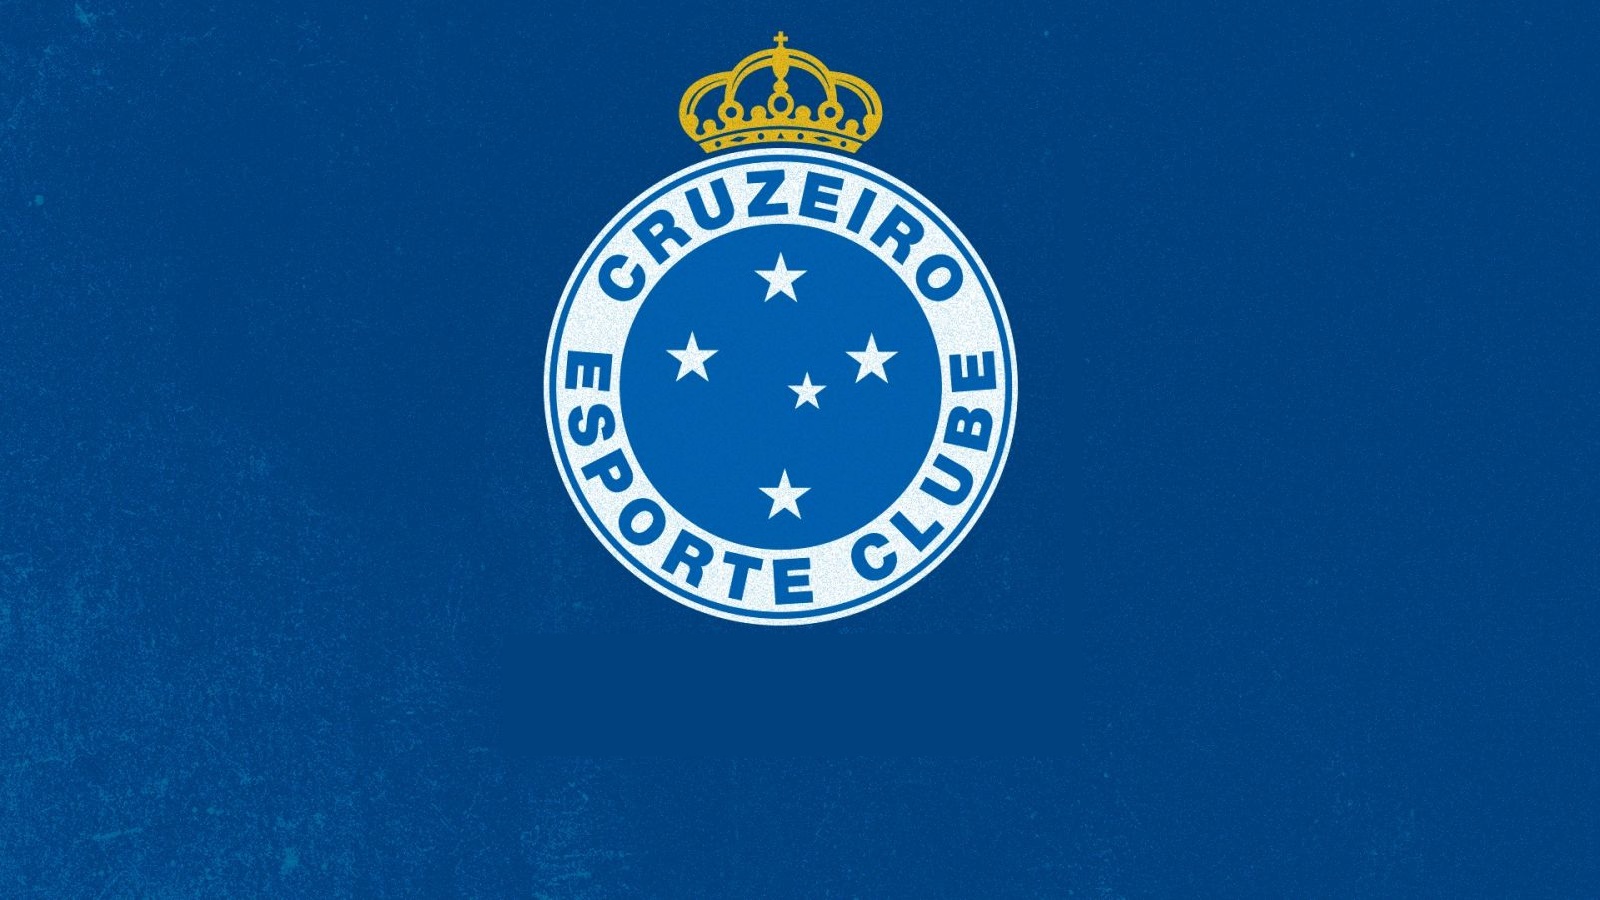 “Situação é dificílima e toda ajuda é bem-vinda”, afirma presidente do Conselho de Gestores do Cruzeiro